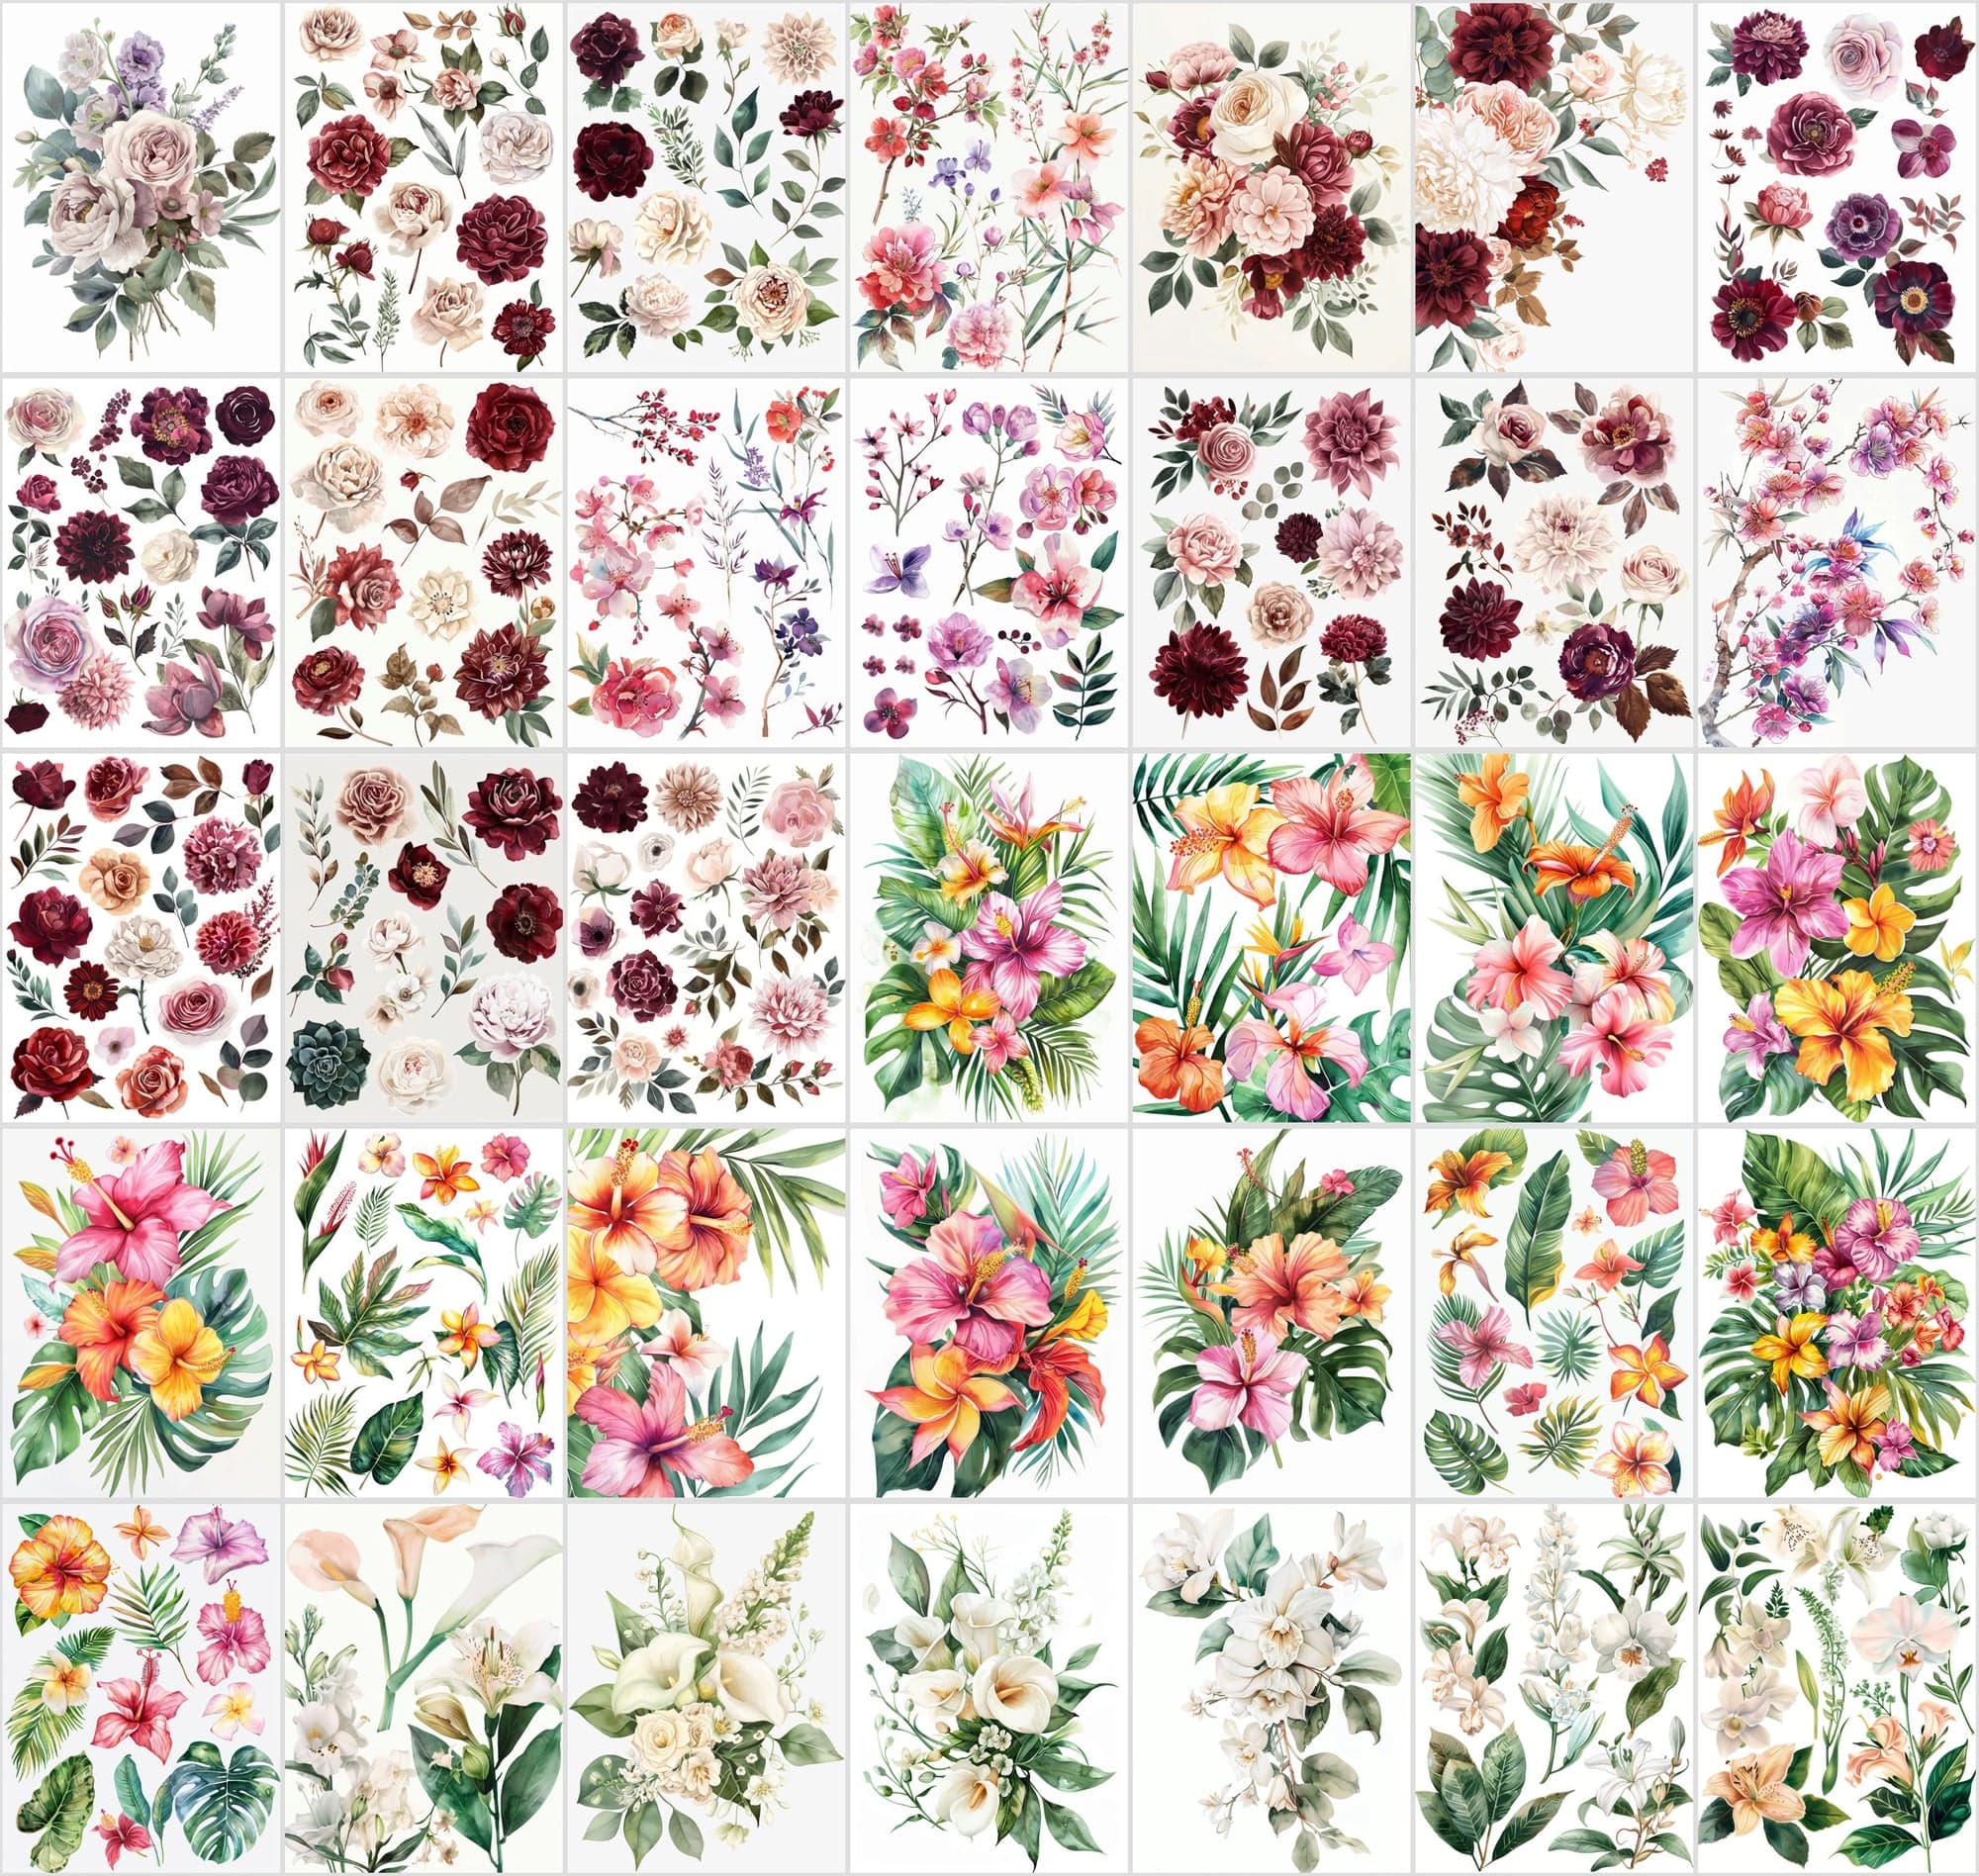 Vibrant Flower Collage Images Bundle - 420 JPG Files, High-Resolution Floral Digital Art with Commercial License Digital Download Sumobundle